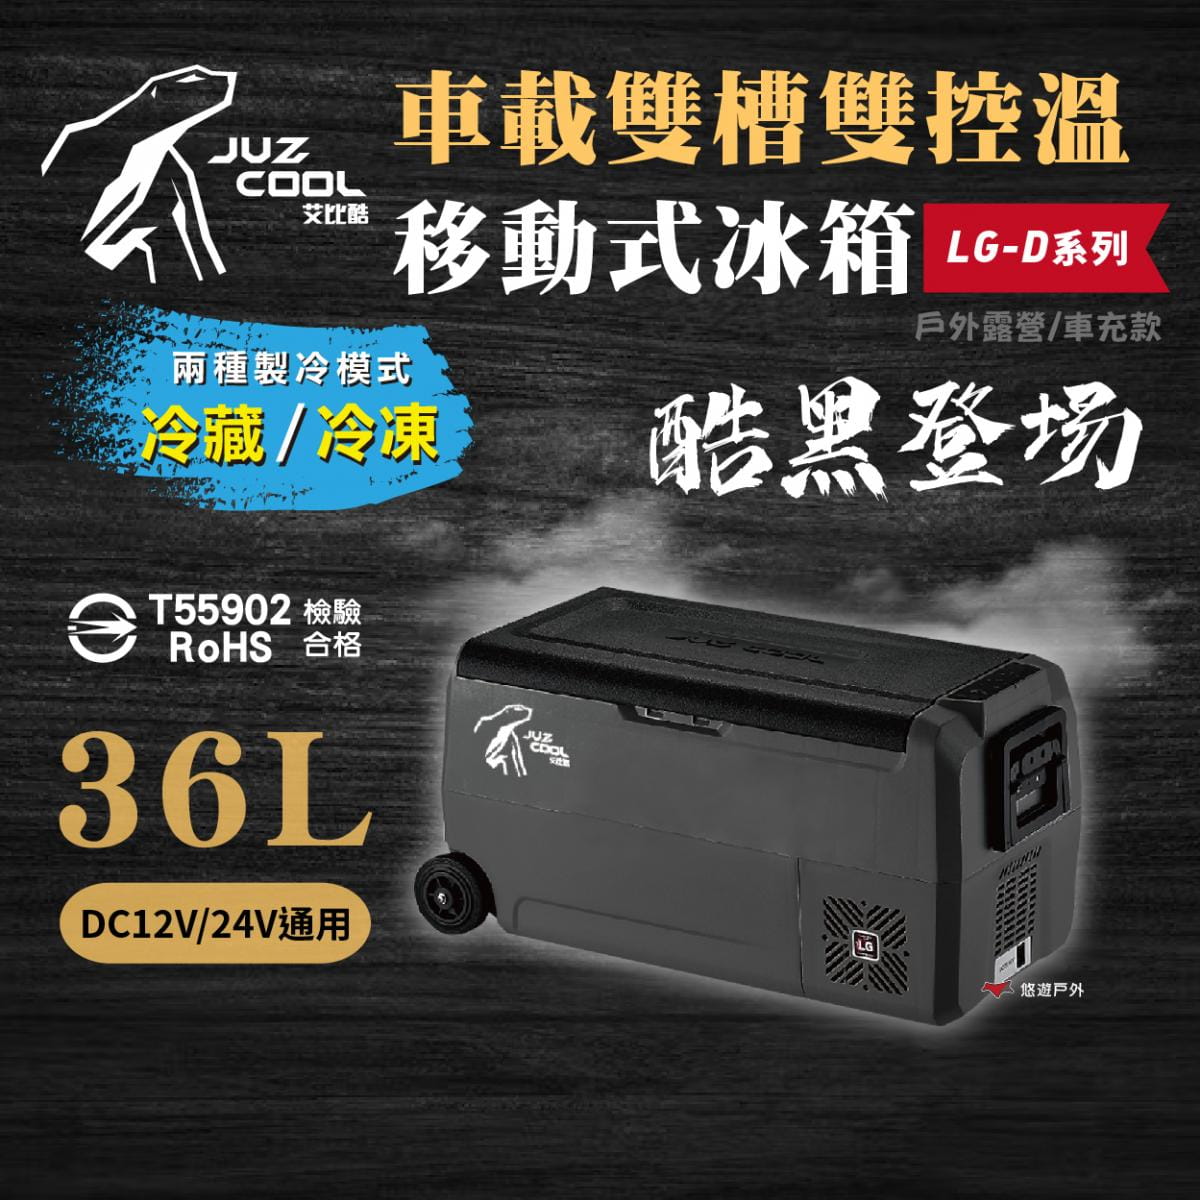 【艾比酷】雙槽雙溫控車用冰箱LG-D36 (悠遊戶外) 1